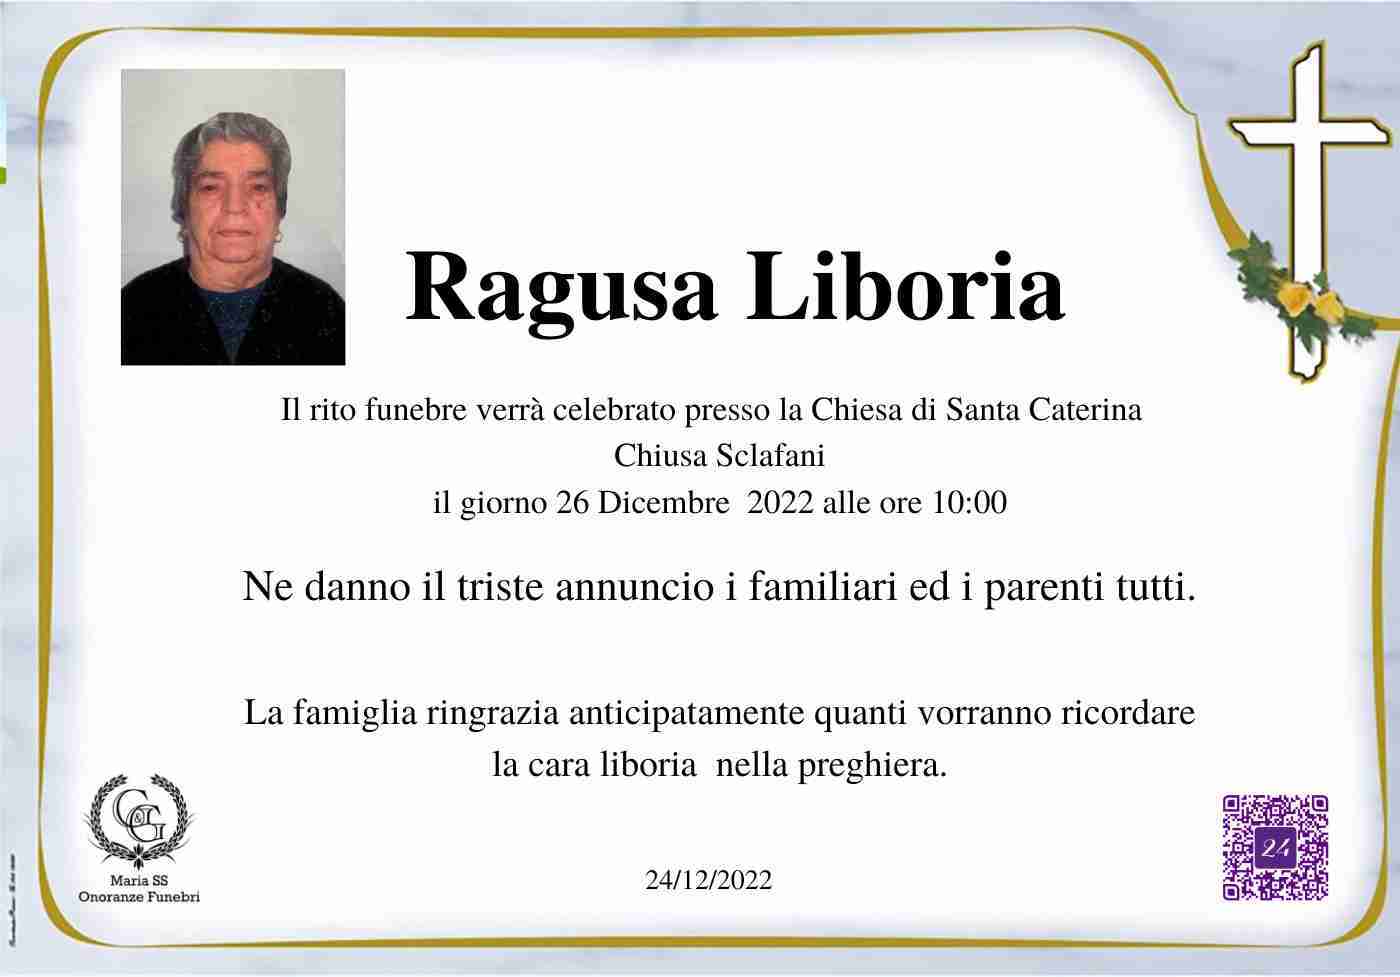 Liboria Ragusa